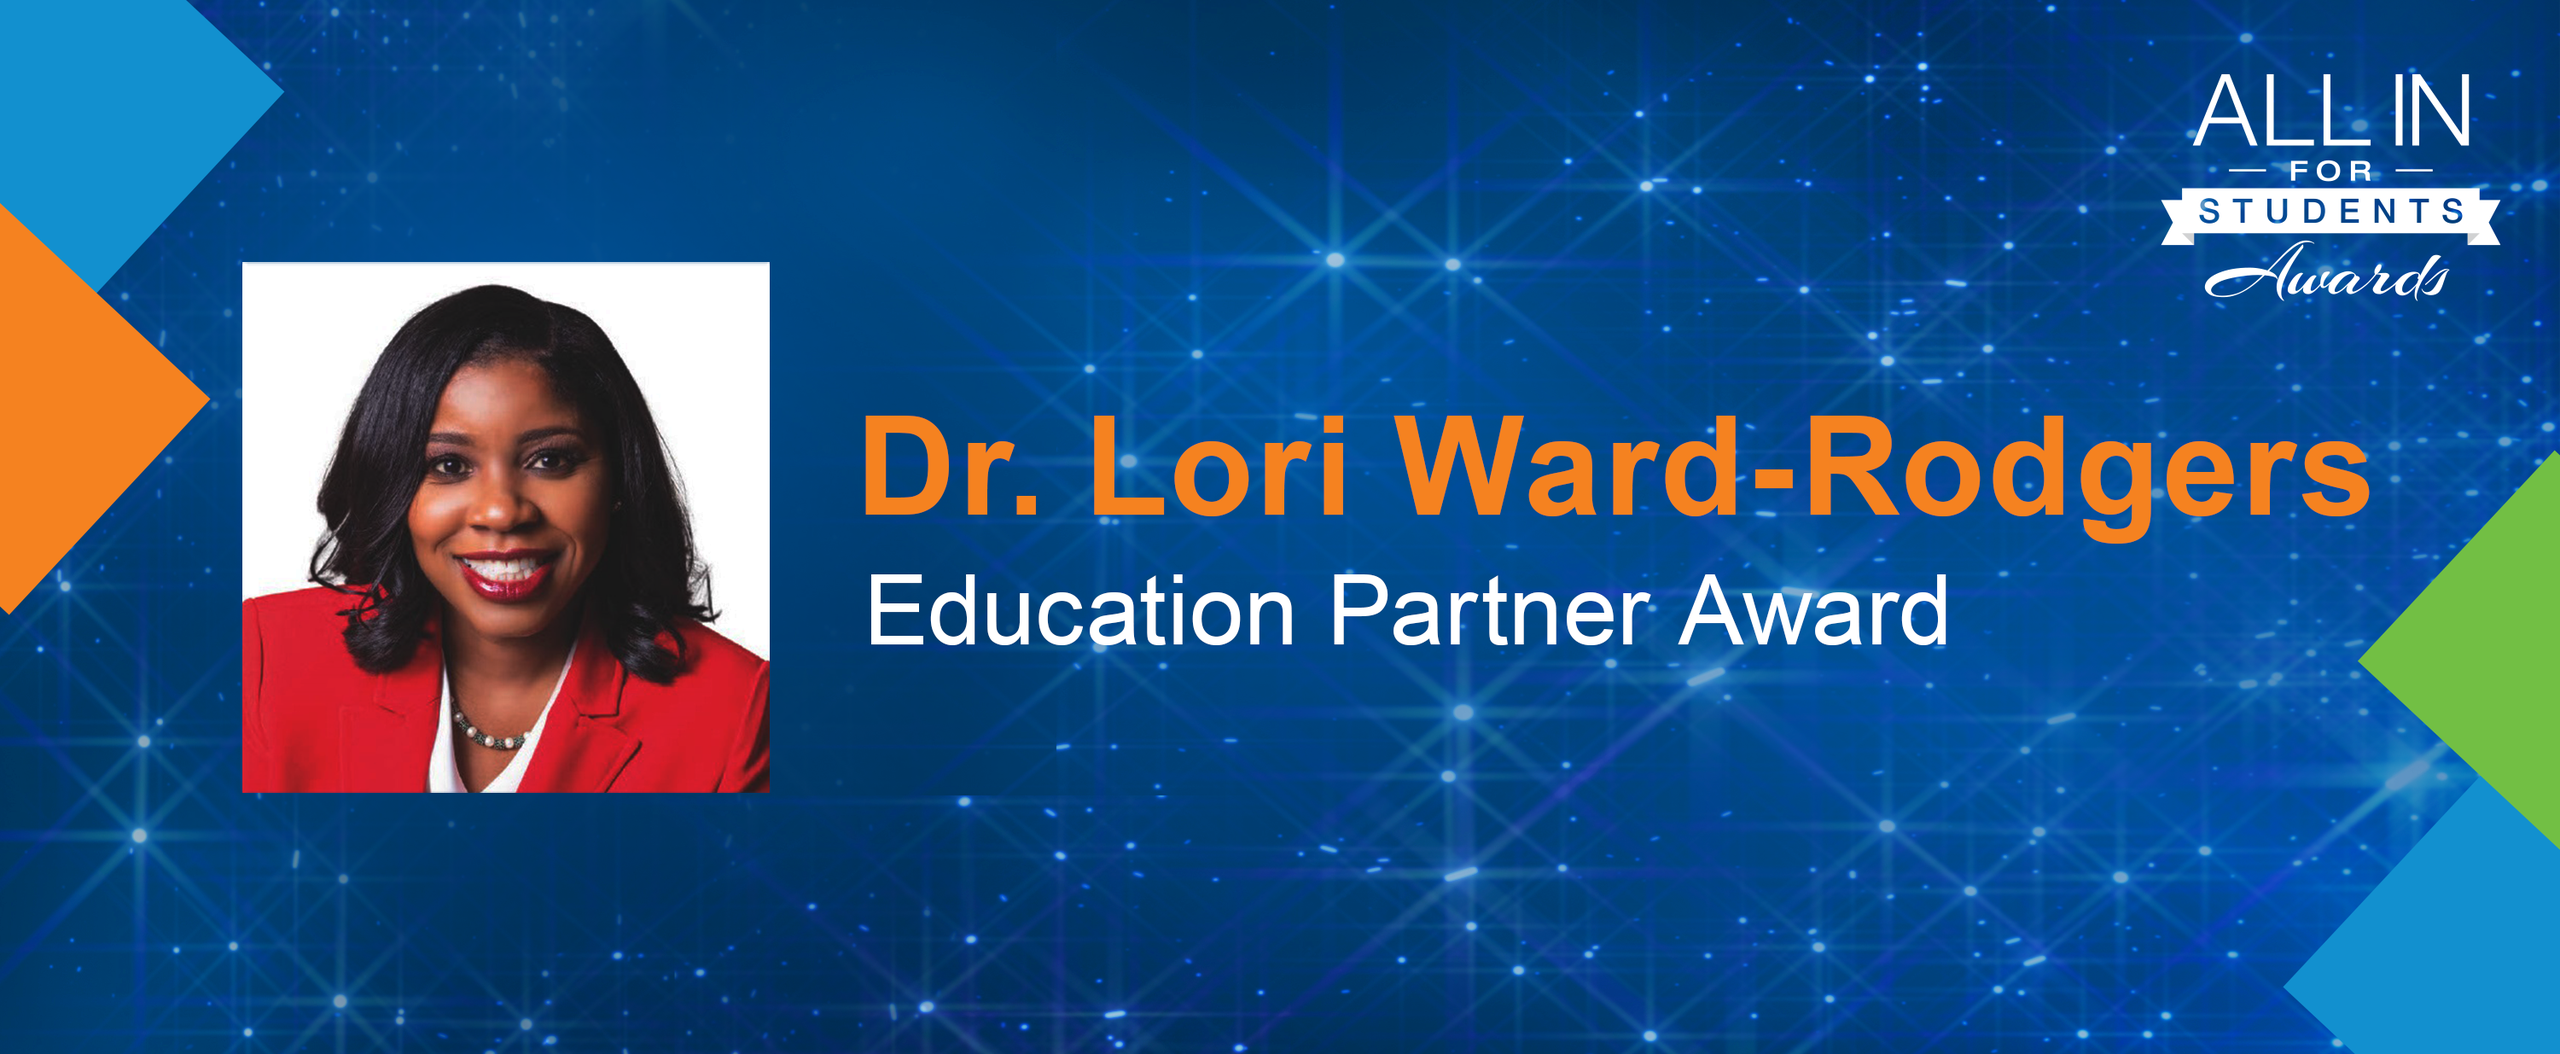 Dr. Lori Ward-Rodgers